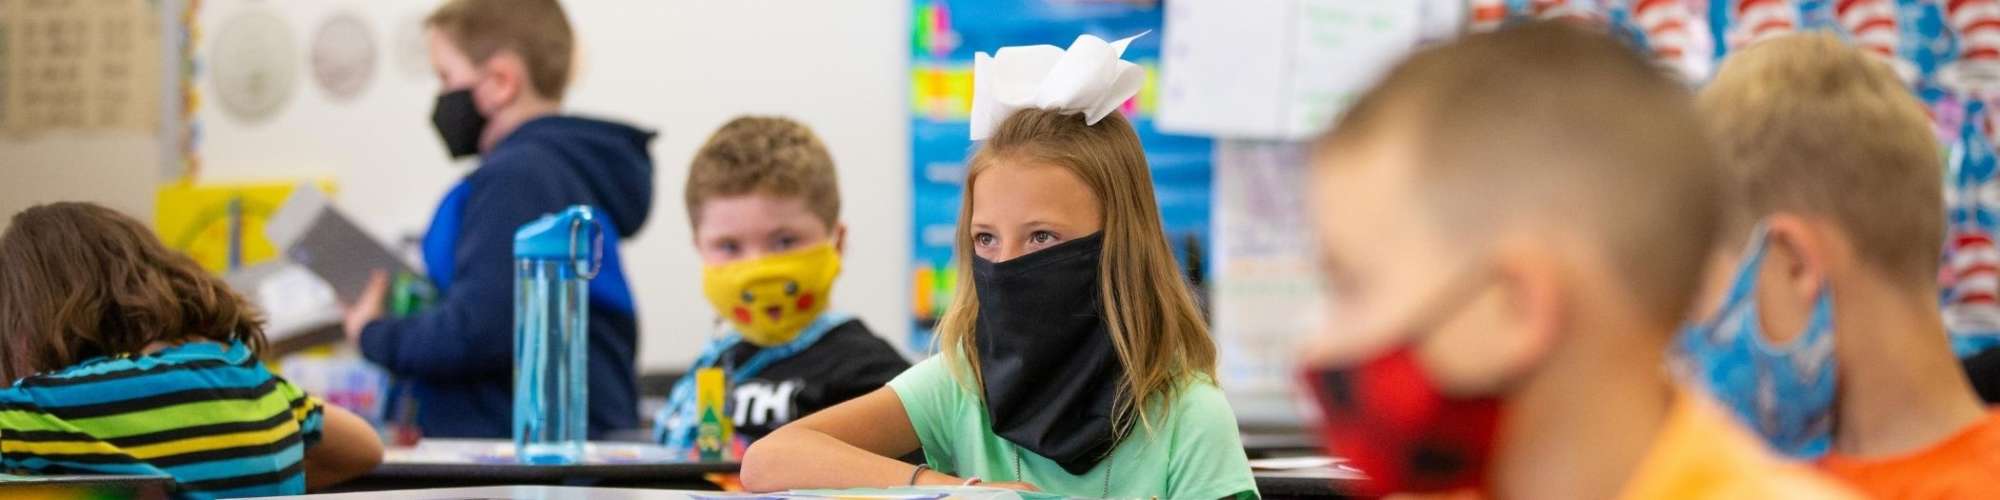 Students sitting at desks, wearing face masks.